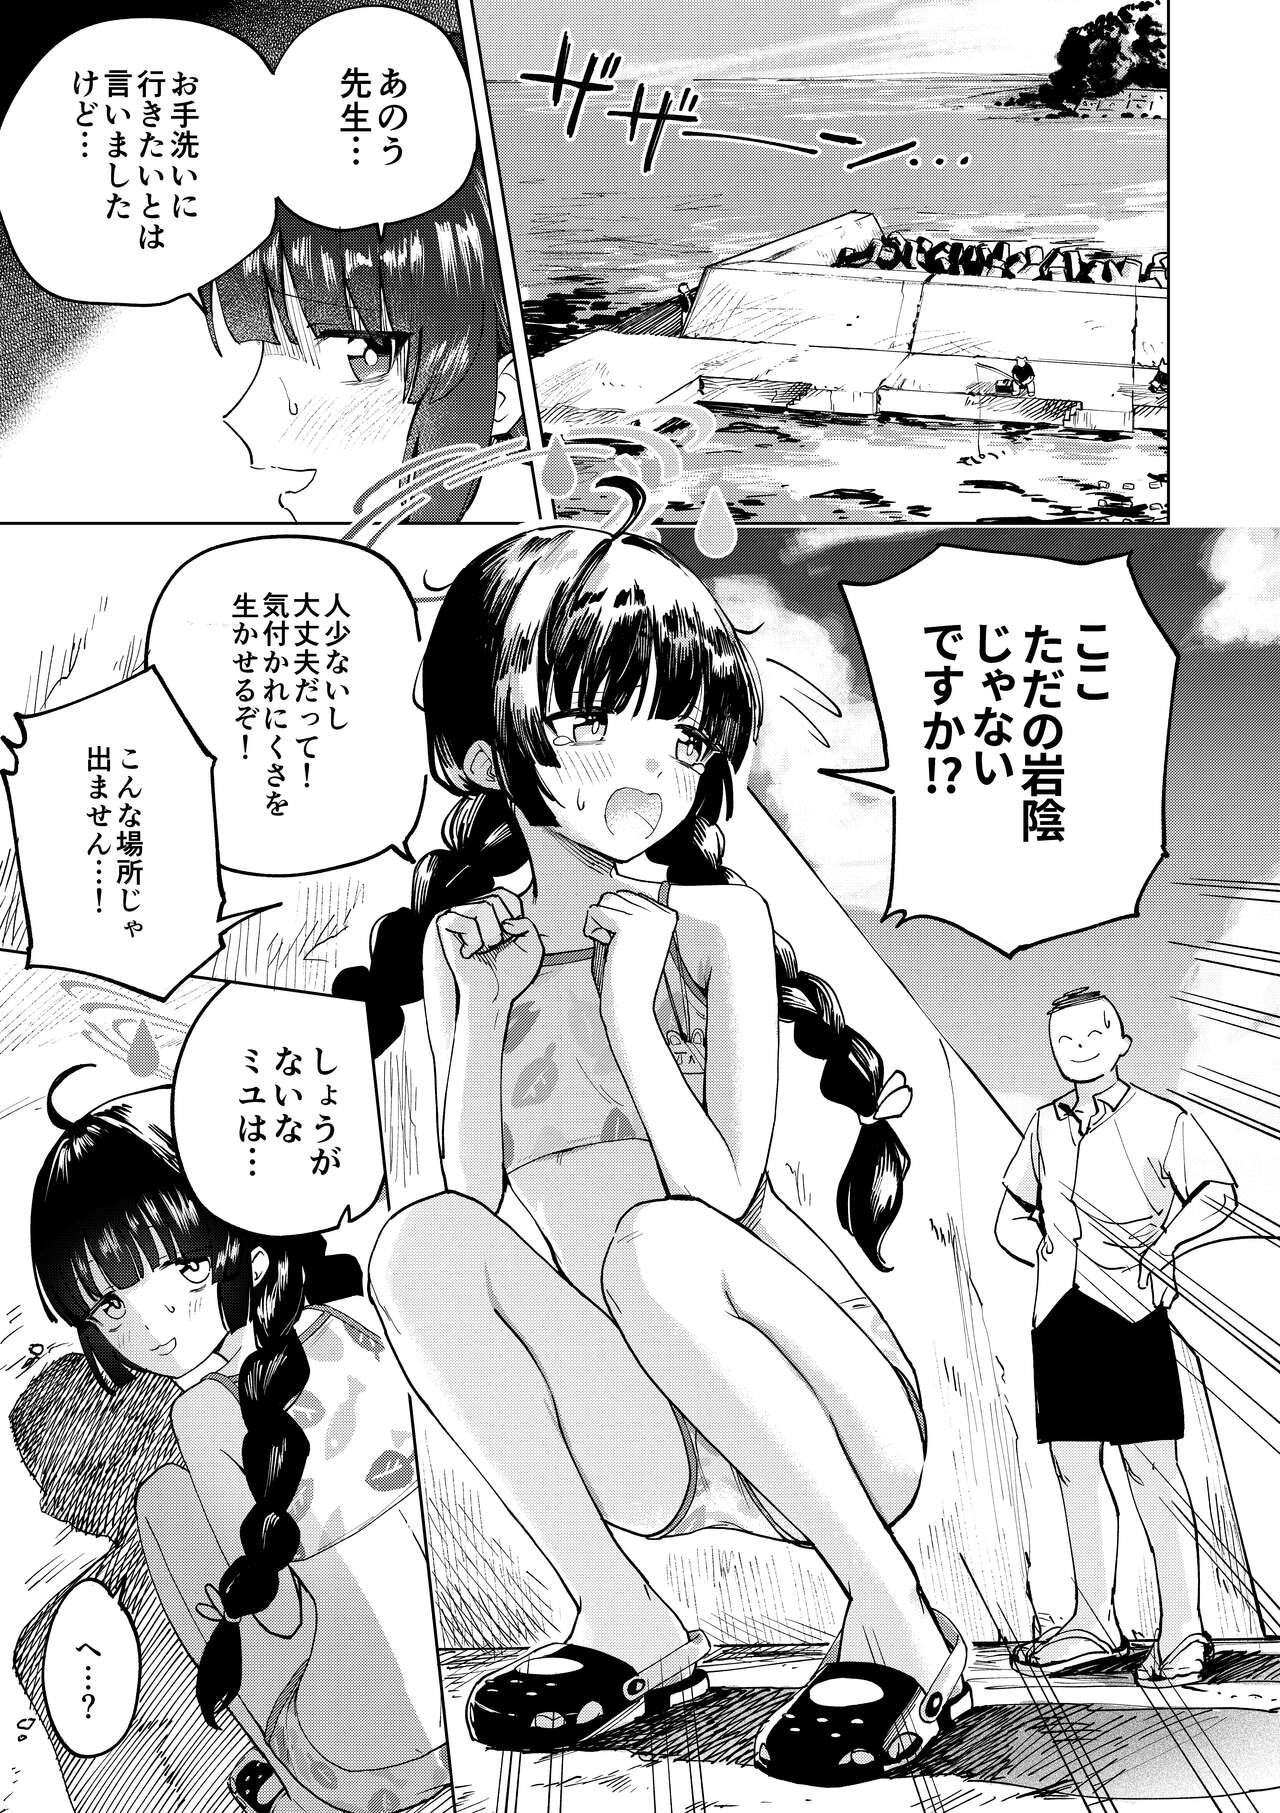 Reverse Miyu to Umi de Oshikko suru Manga - Blue archive Pasivo - Page 1